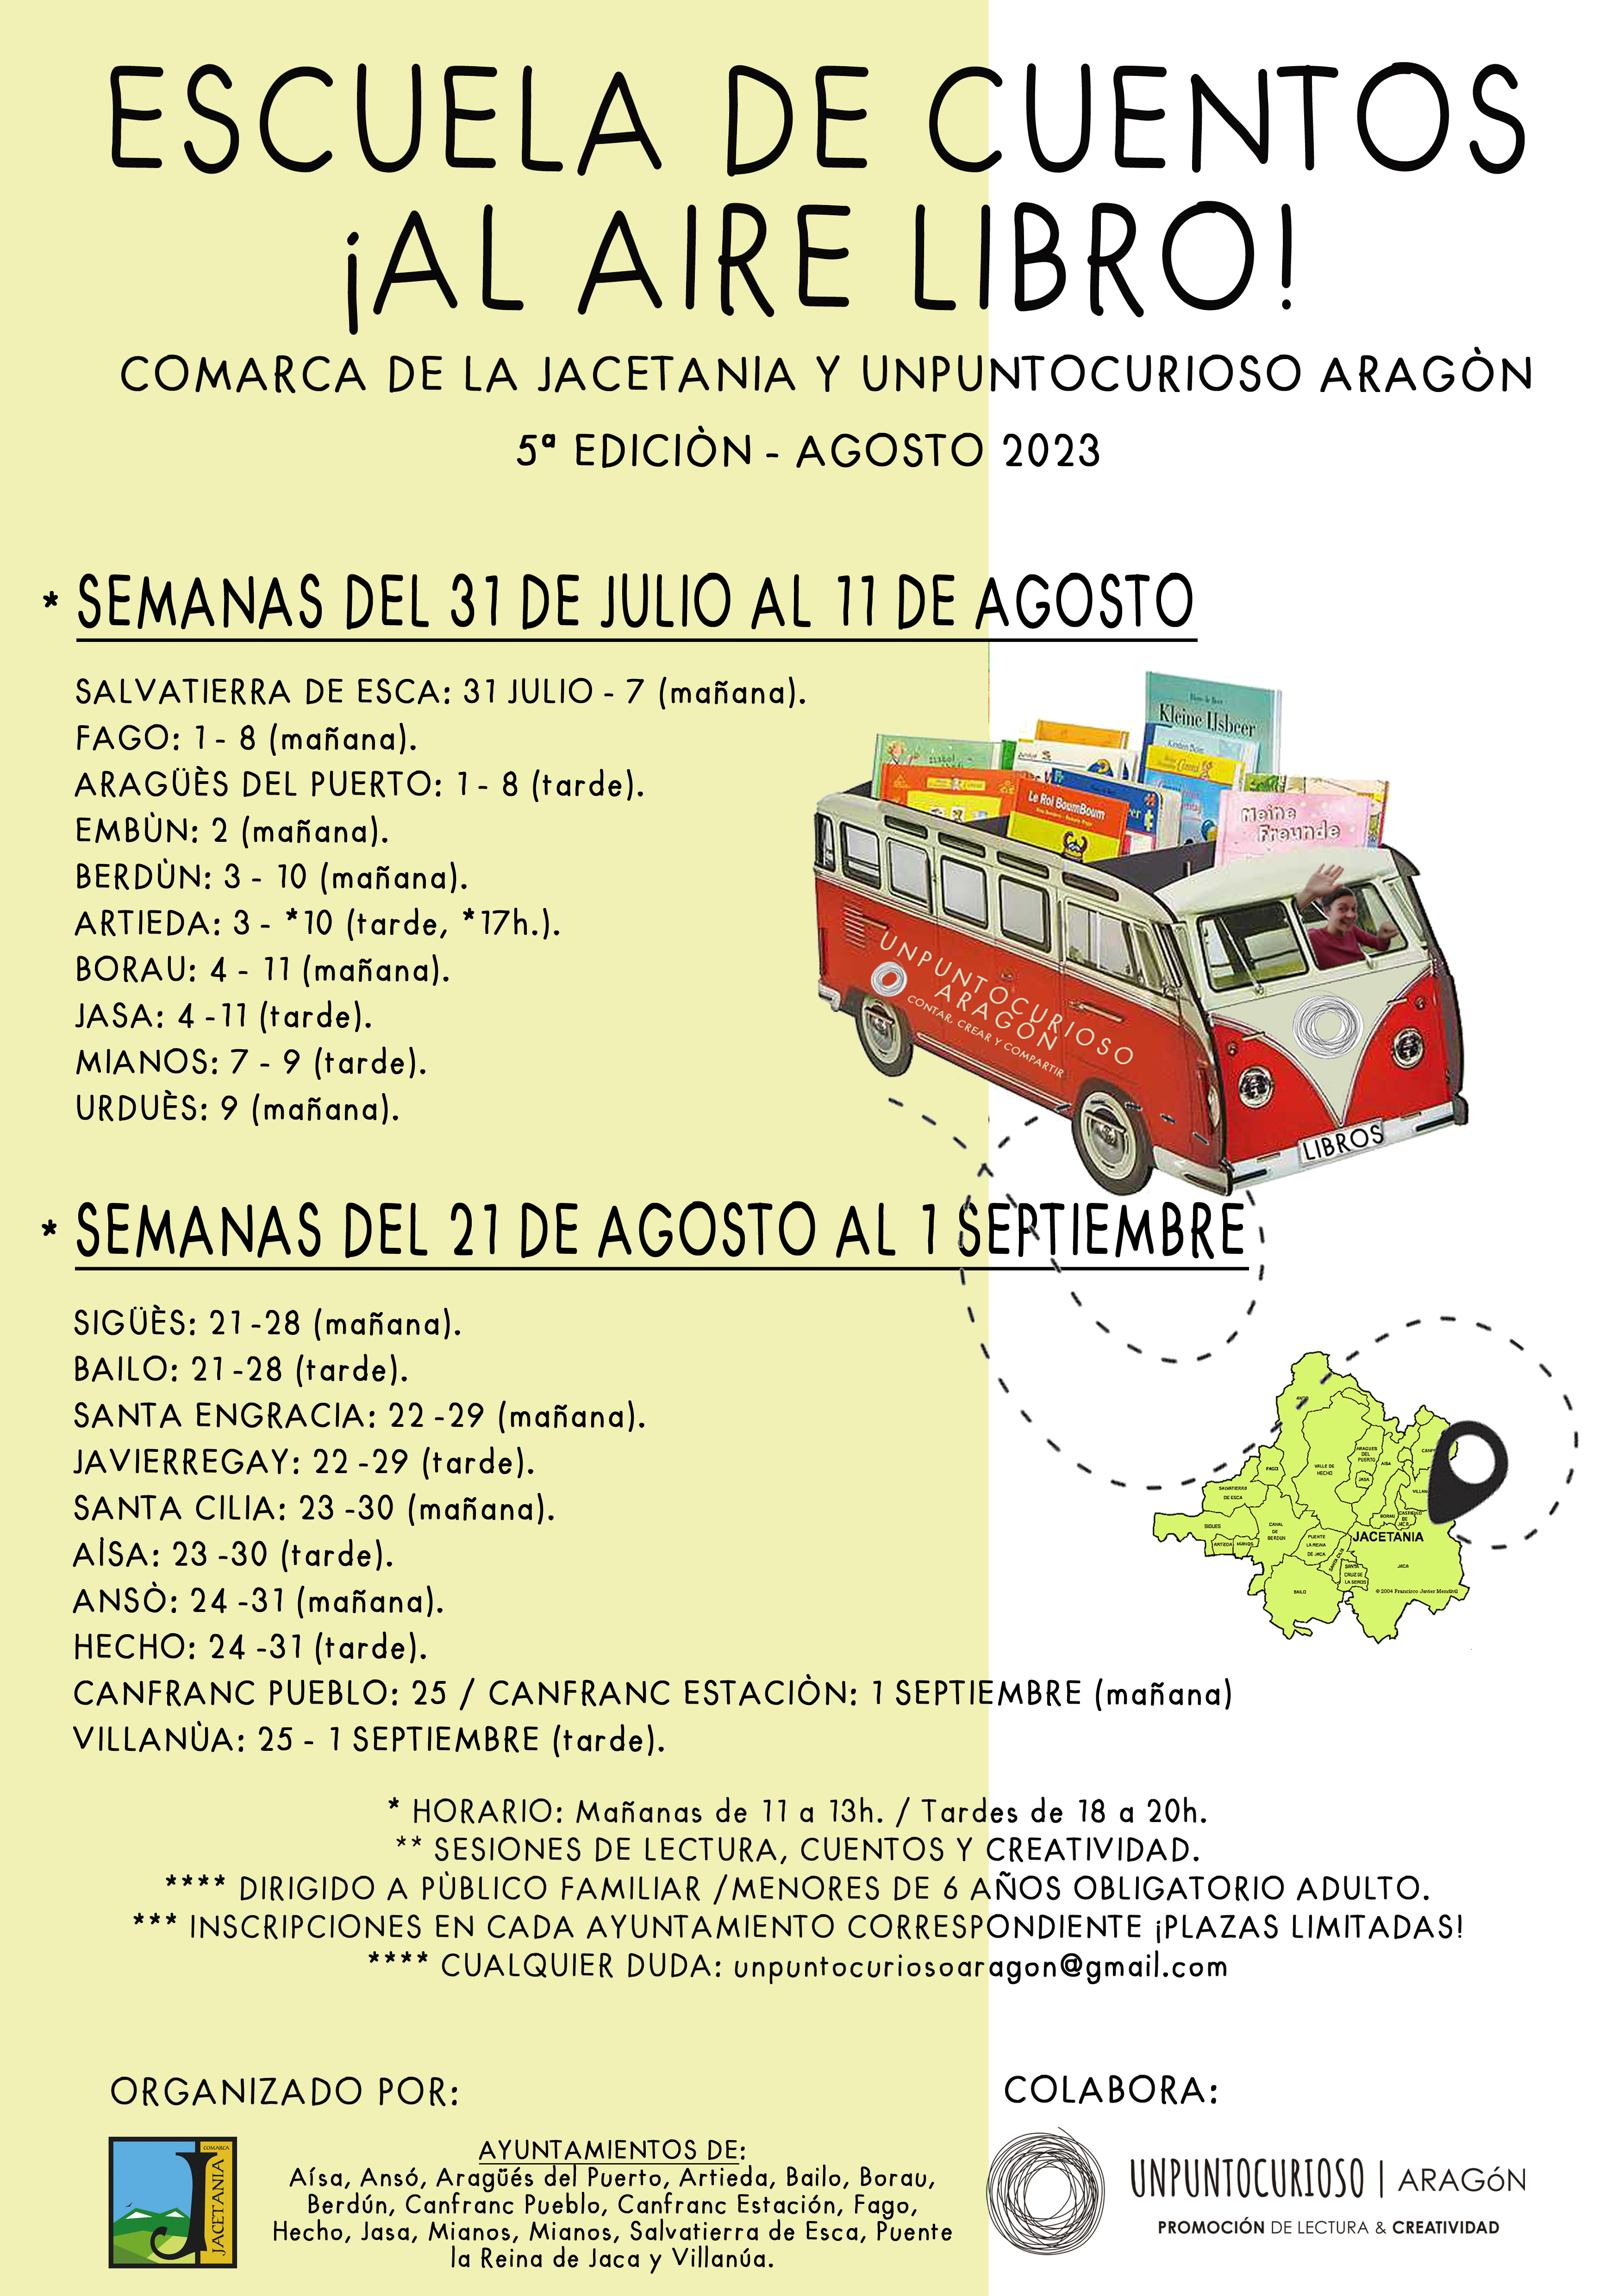 La V Escuela de Cuentos ¡Al aire libro! llegará este verano a 21 pueblos de La Jacetania